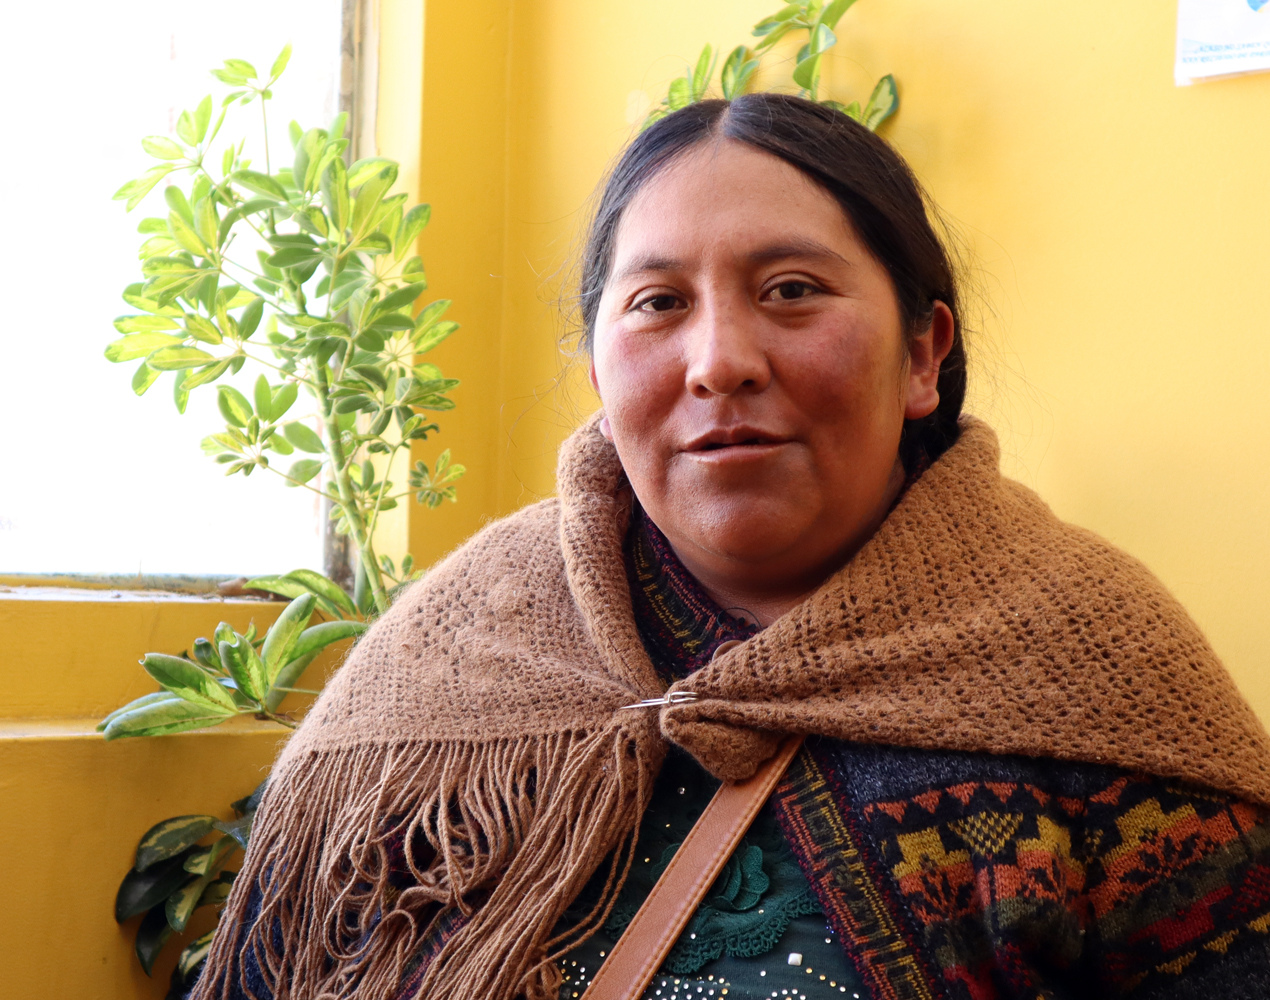 Rintakuva bolivialaisesta naisesta ruskea villahuivi hartioillaan.